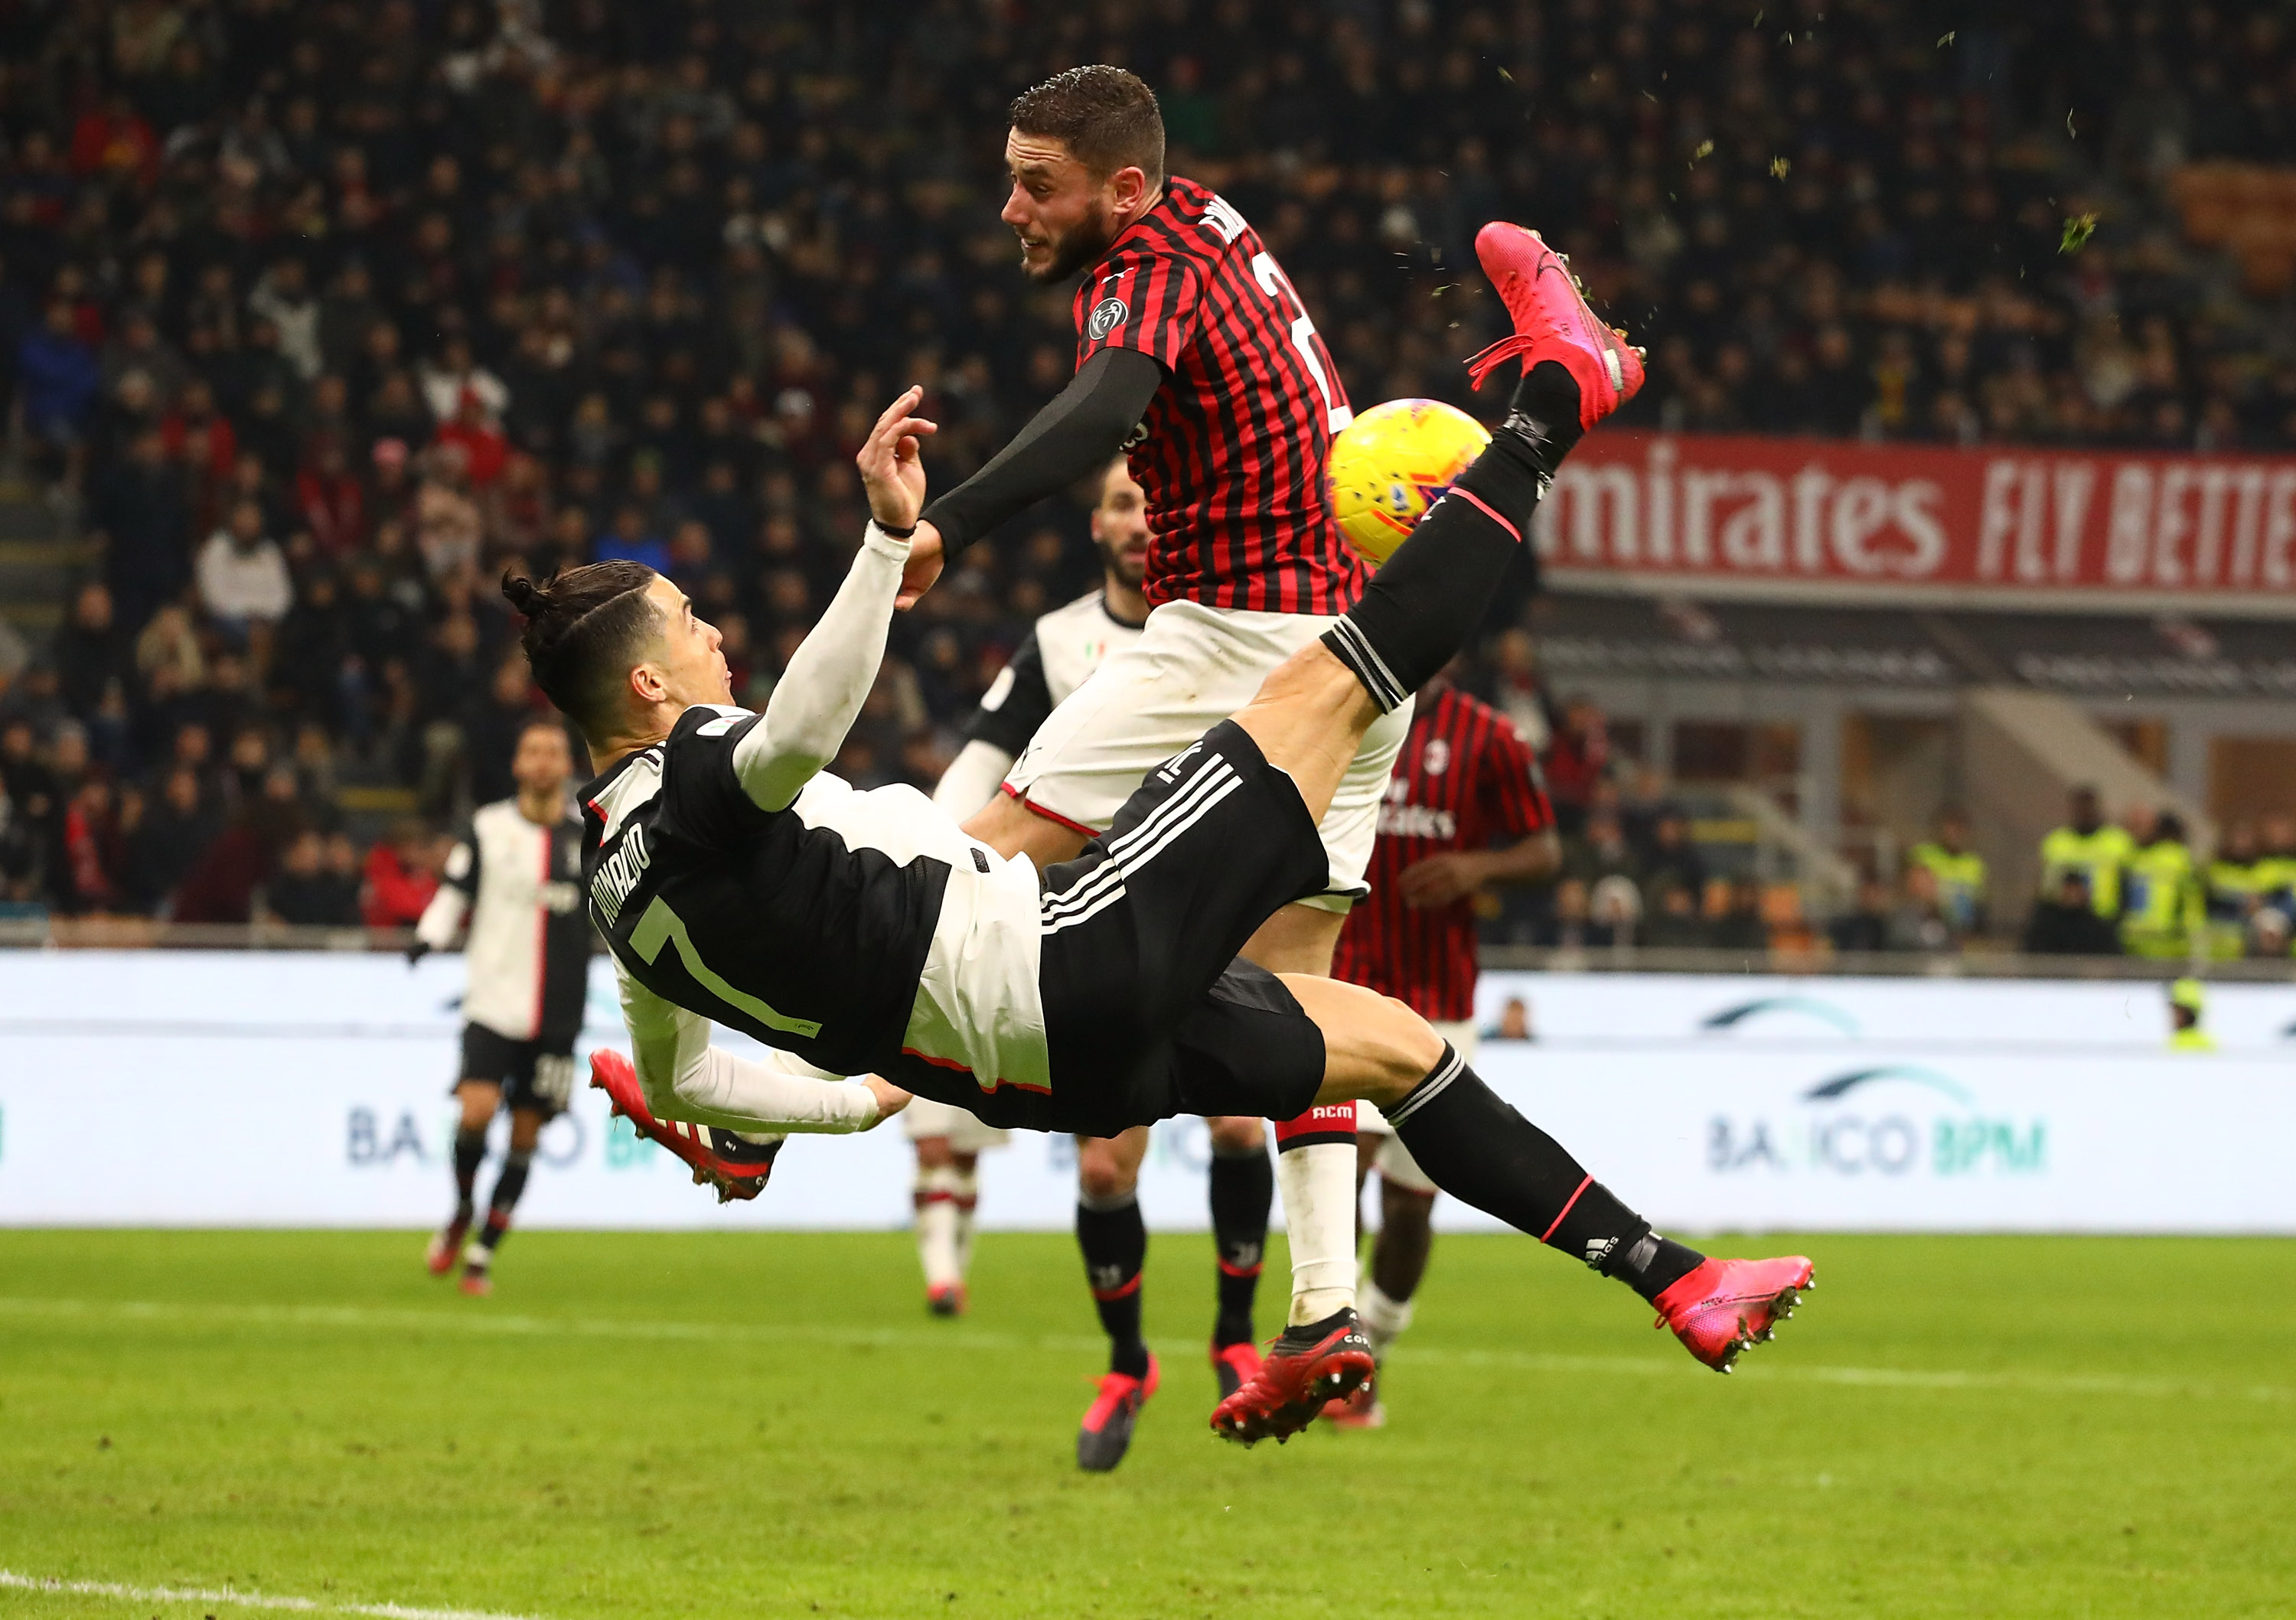 Cristiano Ronaldo ollózása után a milánói Davide Calabria kezére pattant a labda a 16-oson belül, a büntetőt belőtte a portugál – góljával megmentette a vereség-től a Juventust/ Fotó: GETTY IMAGES